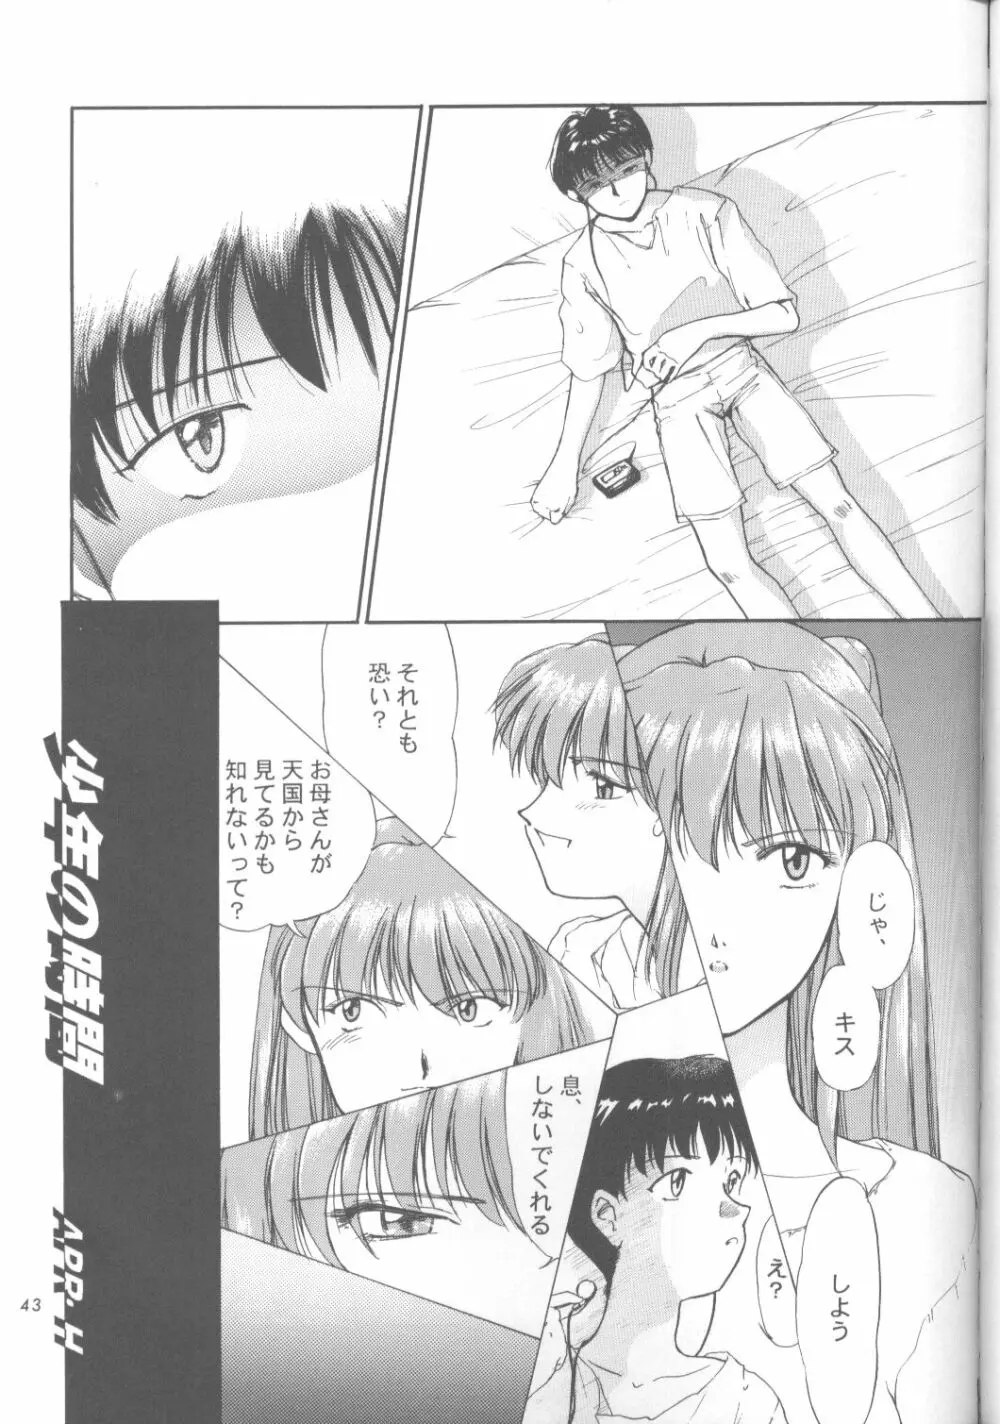 綾波零式 Ayanami Zero Spec 42ページ